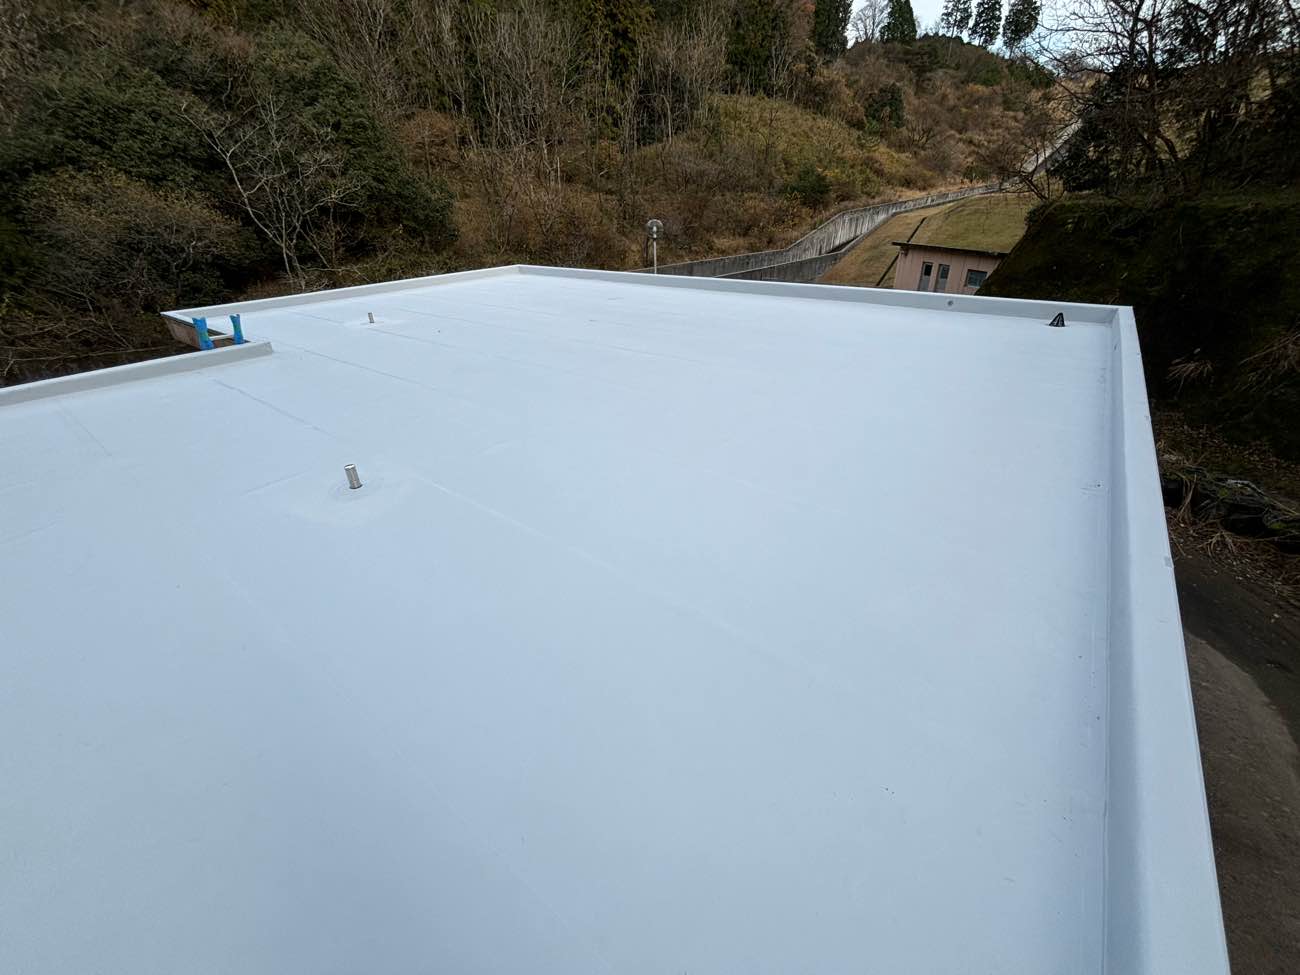 塩ビシート防水絶縁機械固定工法による屋根改修工事